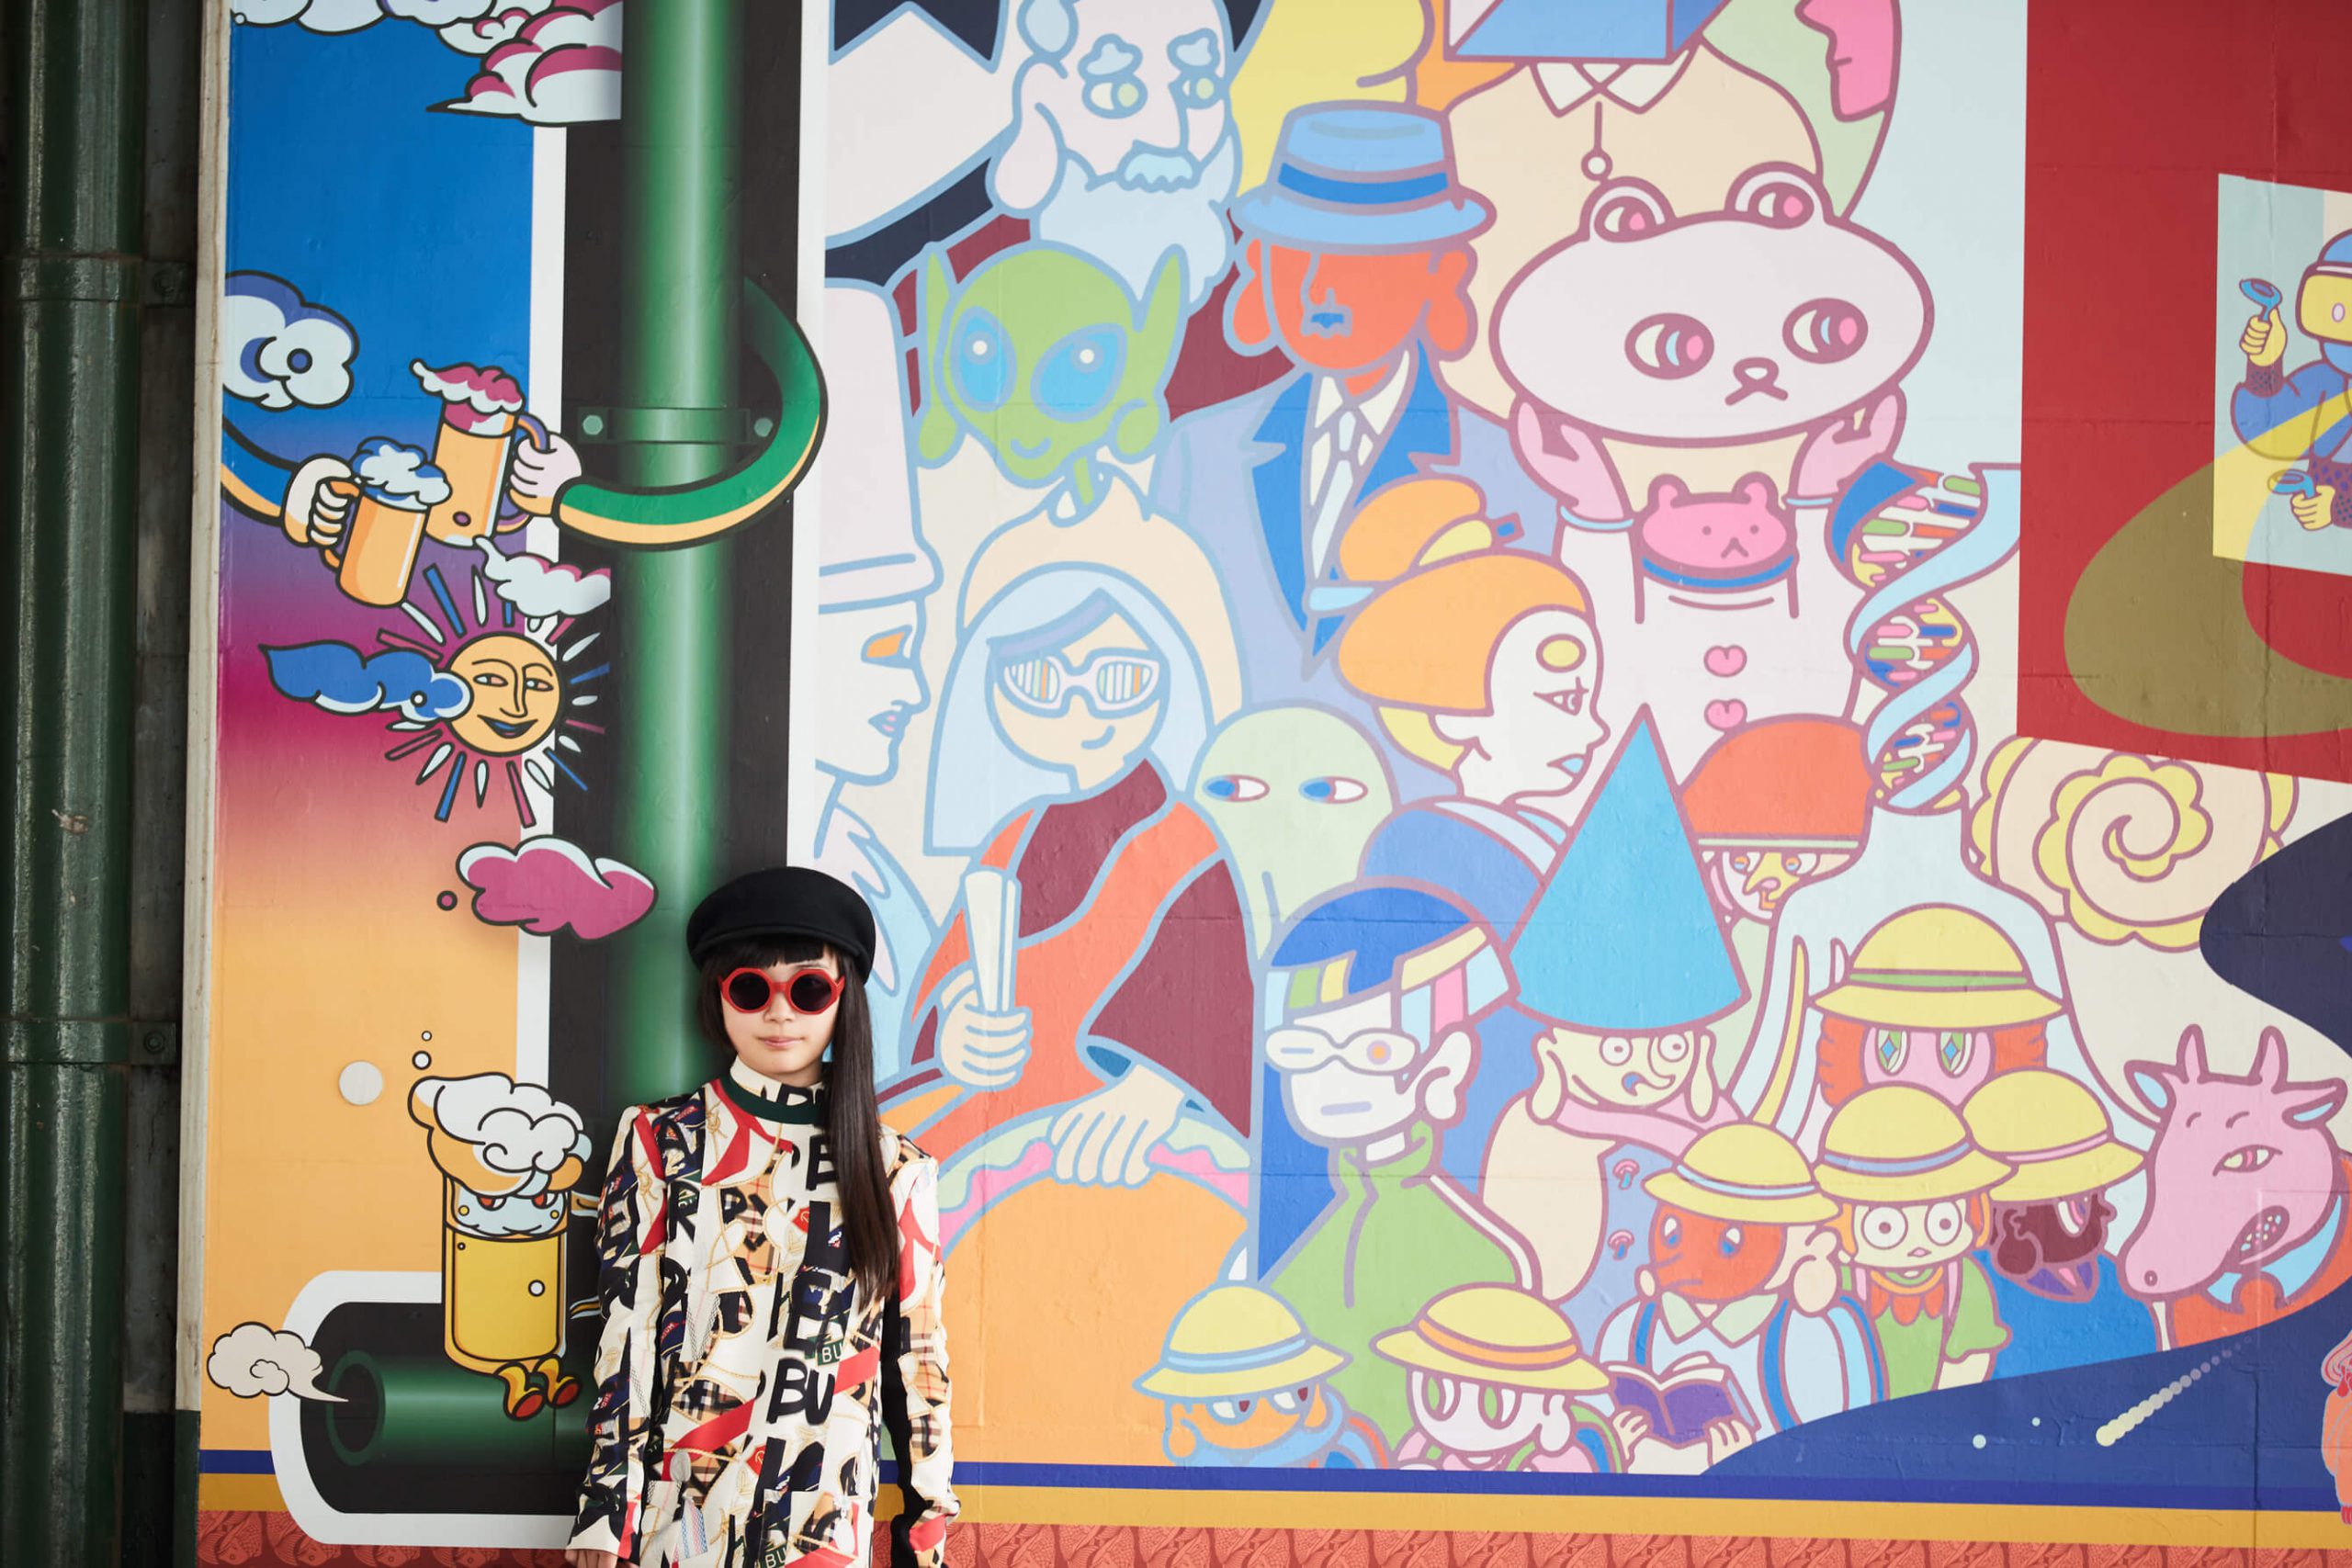 恵比寿駅高架下の壁画を描いた若きクリエイター 白川深紅さんのアートな人生